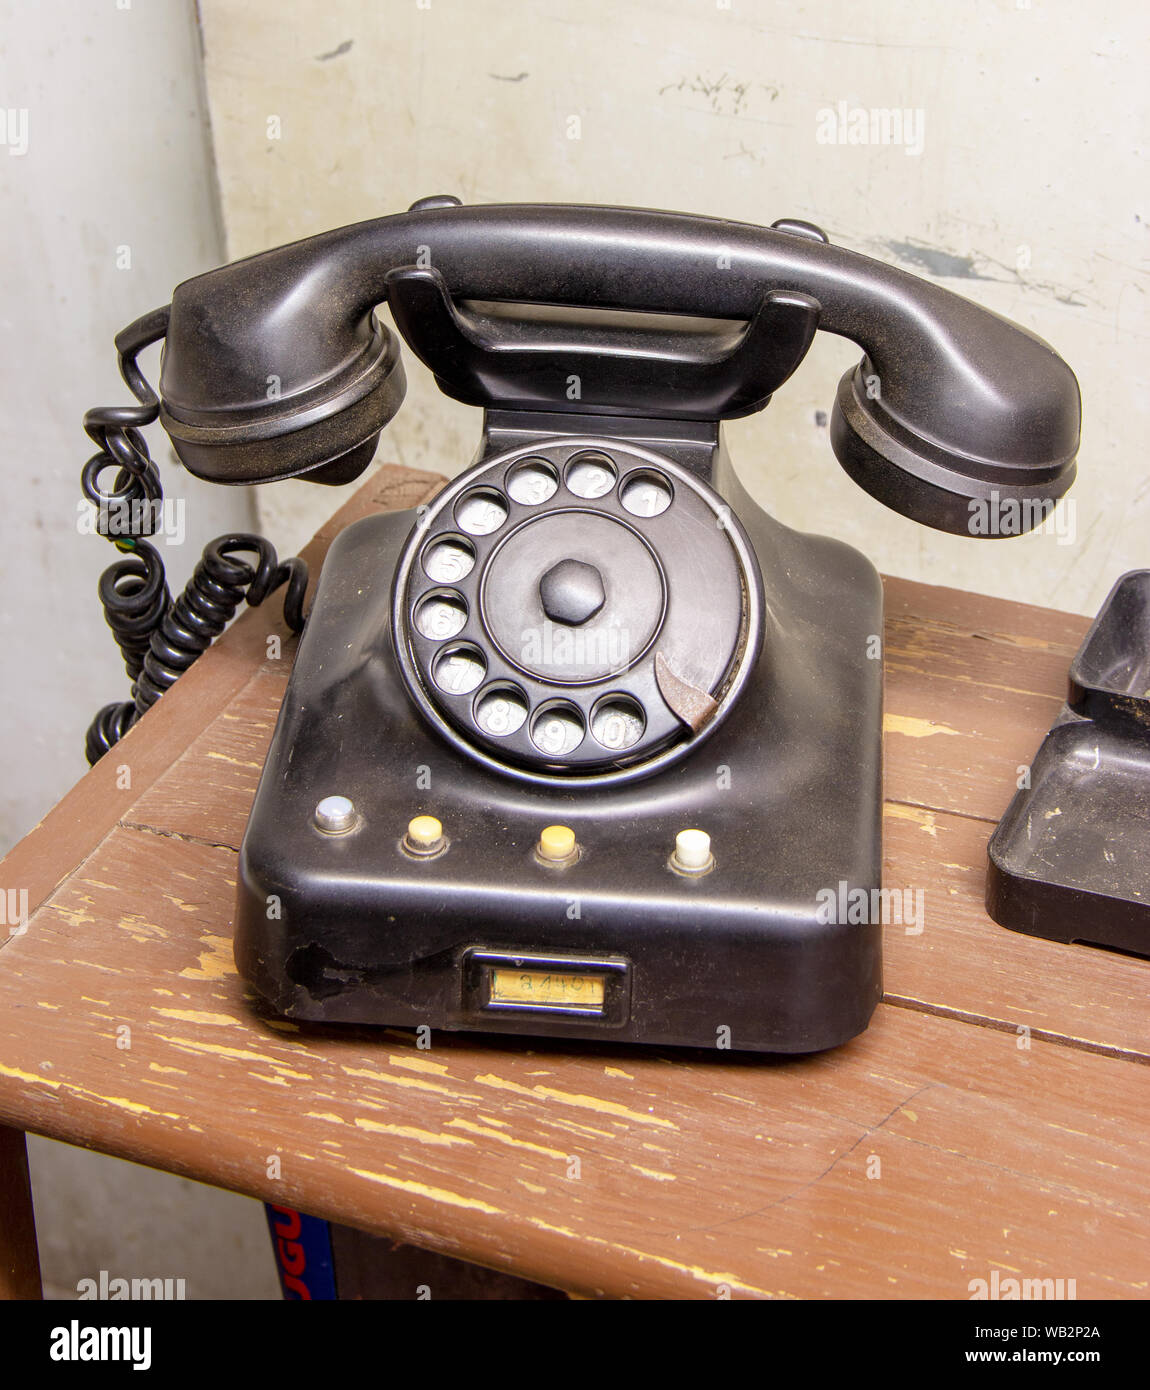 Ancien téléphone cadran noir de la 80s à un office Banque D'Images